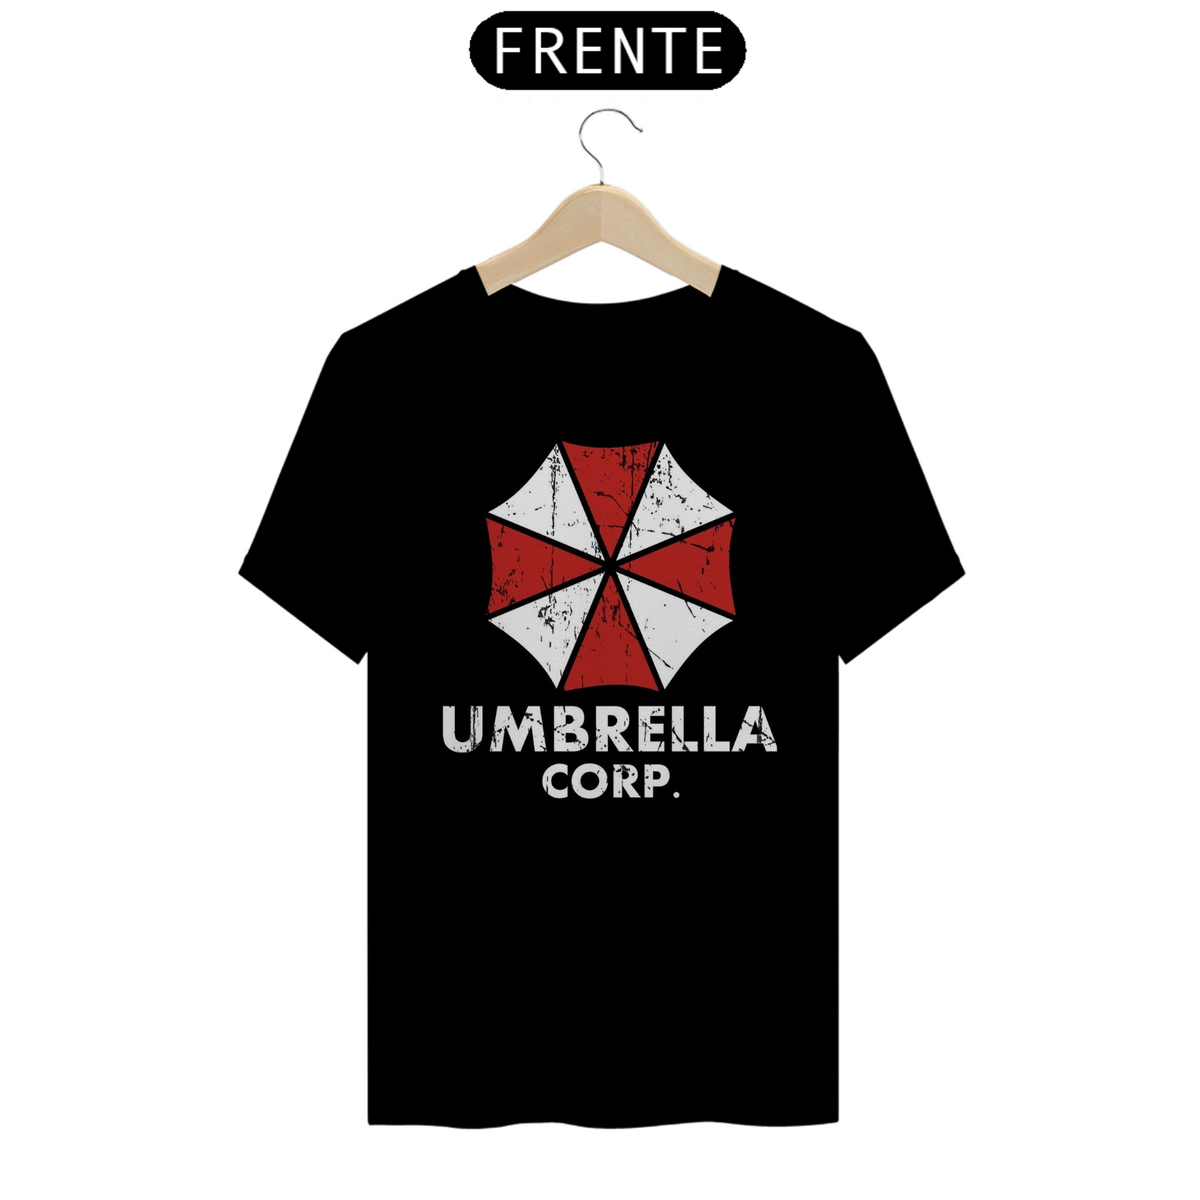 Nome do produto: Umbrella